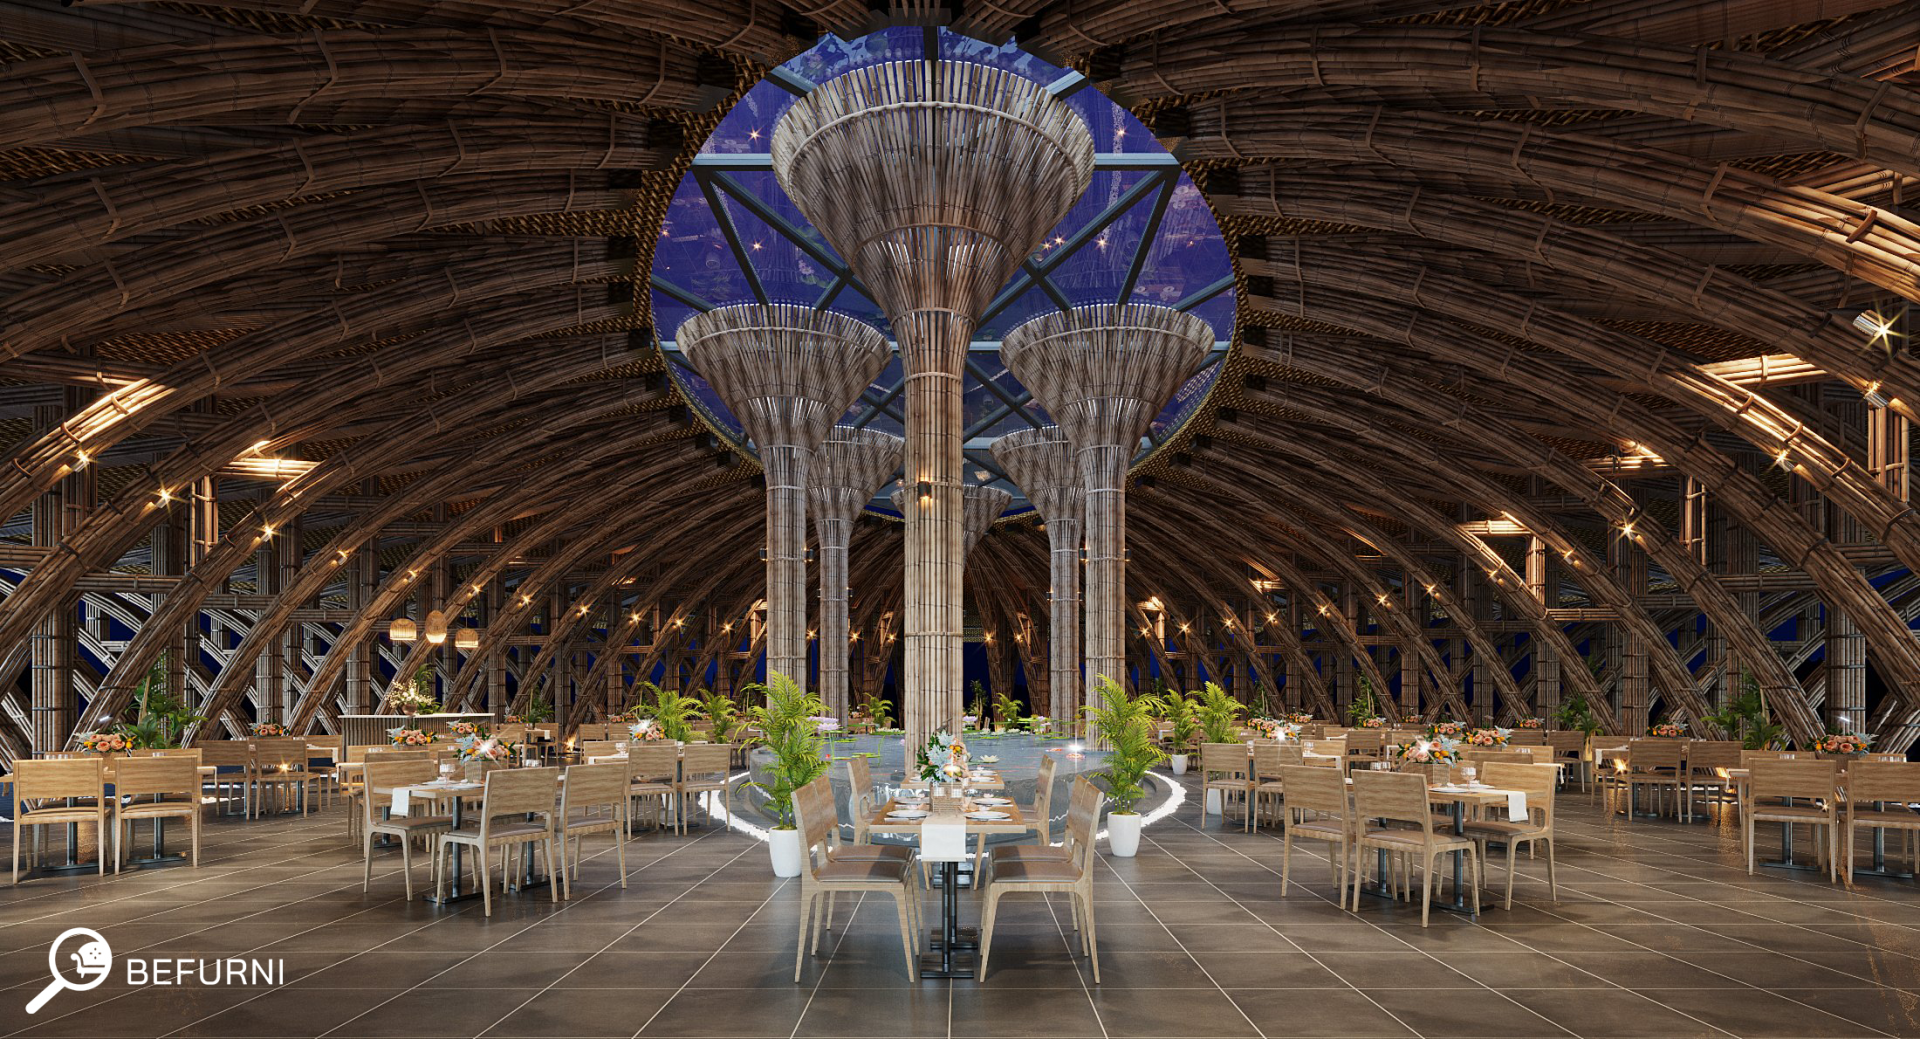 thiết kế kiến trúc - Nhà hàng tre lam sơn của công ty befurni